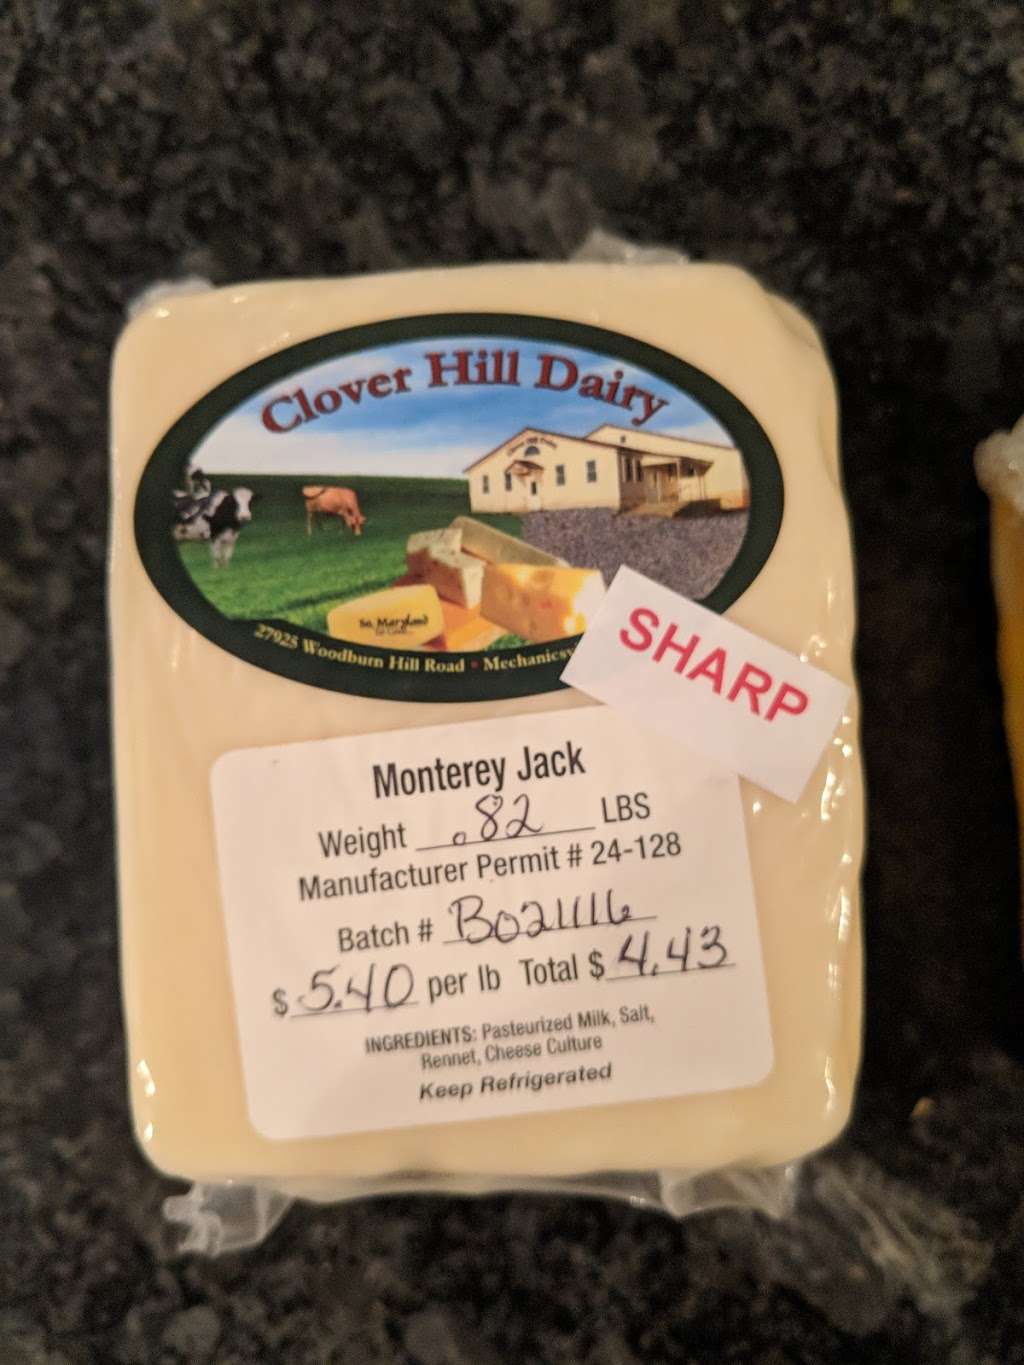 Clover Hill Dairy | 27925 Woodburn Hill Rd, Mechanicsville, MD 20659, USA